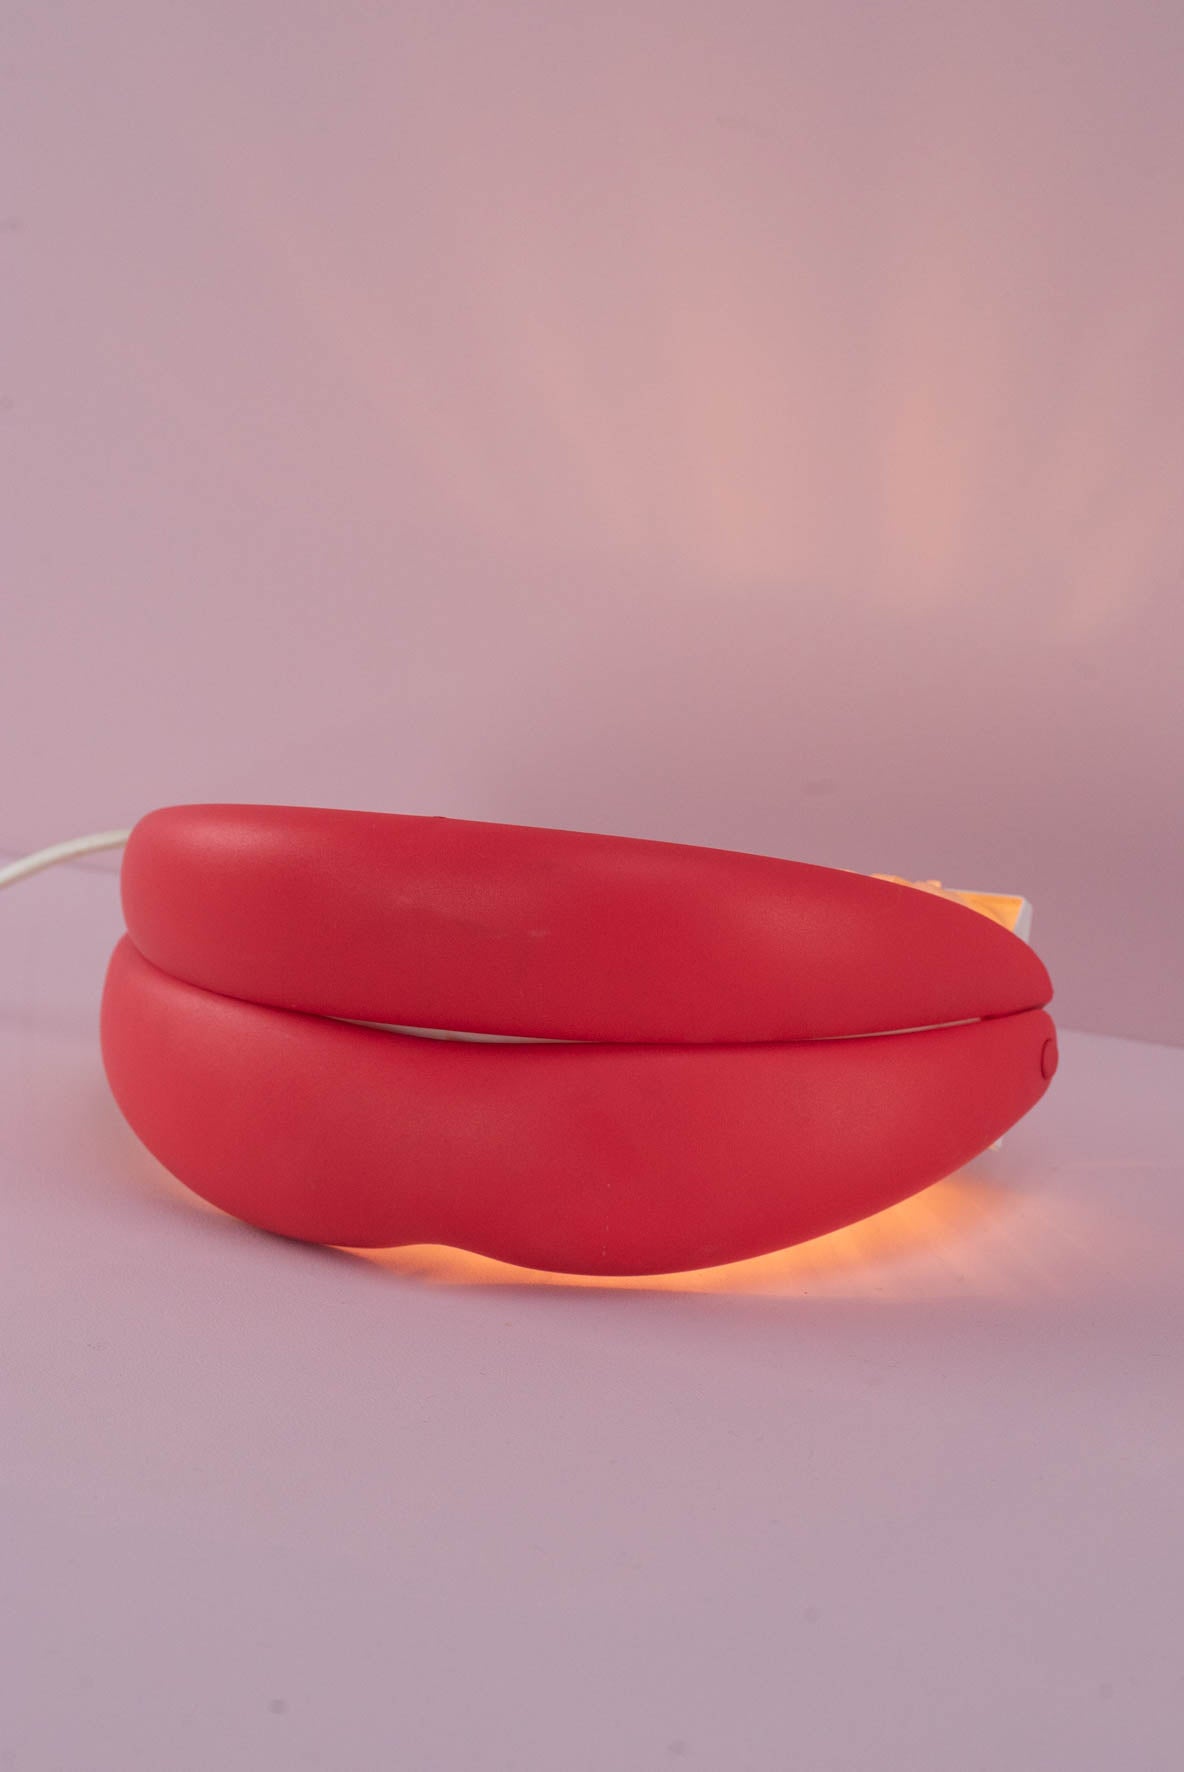 Flabb lamp by Ikea